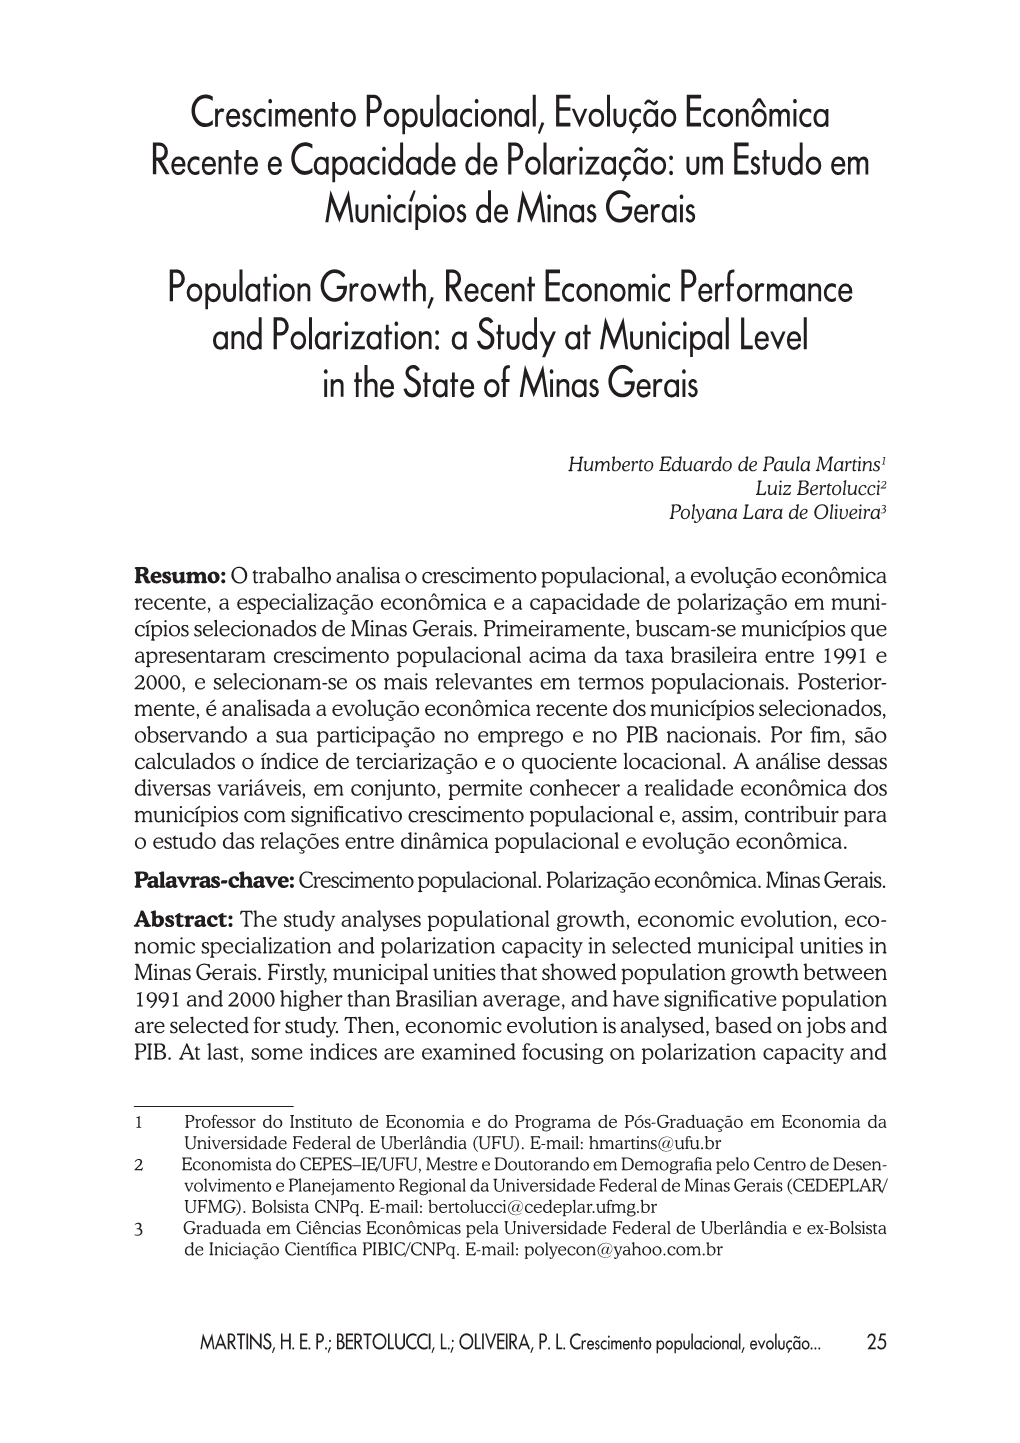 Crescimento Populacional, Evolução Econômica Recente E Capacidade